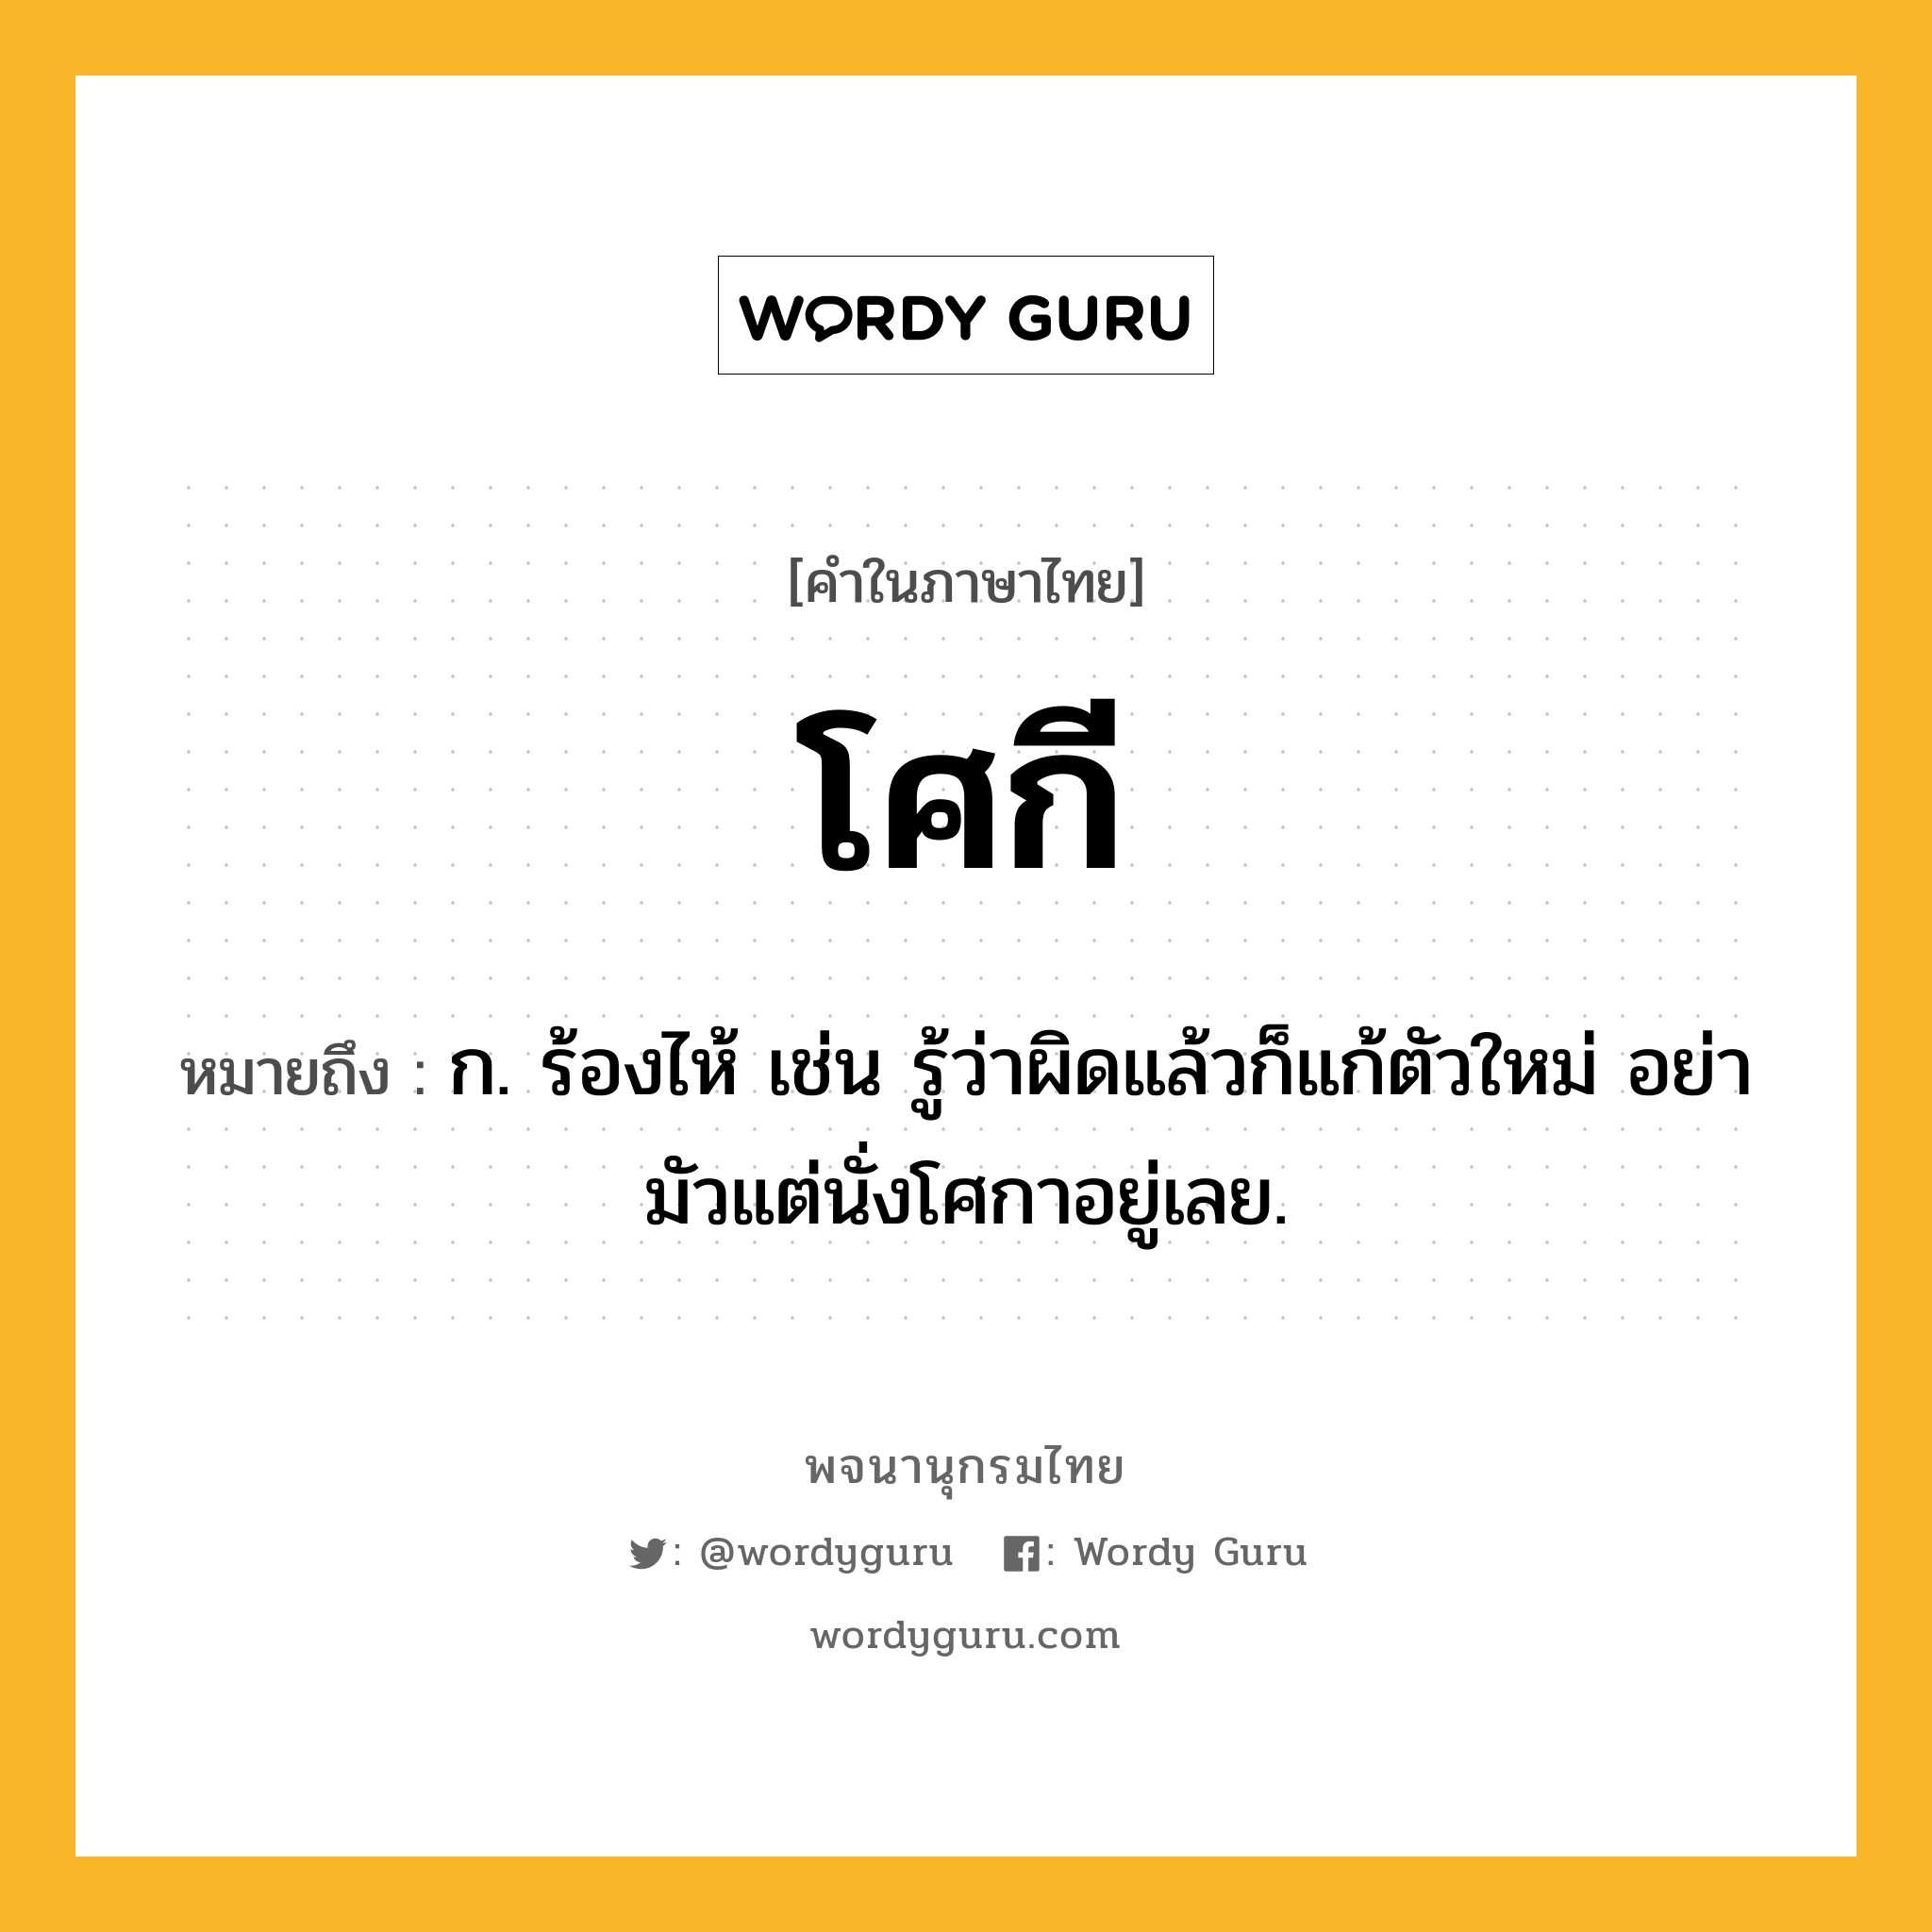 โศกี ความหมาย หมายถึงอะไร?, คำในภาษาไทย โศกี หมายถึง ก. ร้องไห้ เช่น รู้ว่าผิดแล้วก็แก้ตัวใหม่ อย่ามัวแต่นั่งโศกาอยู่เลย.